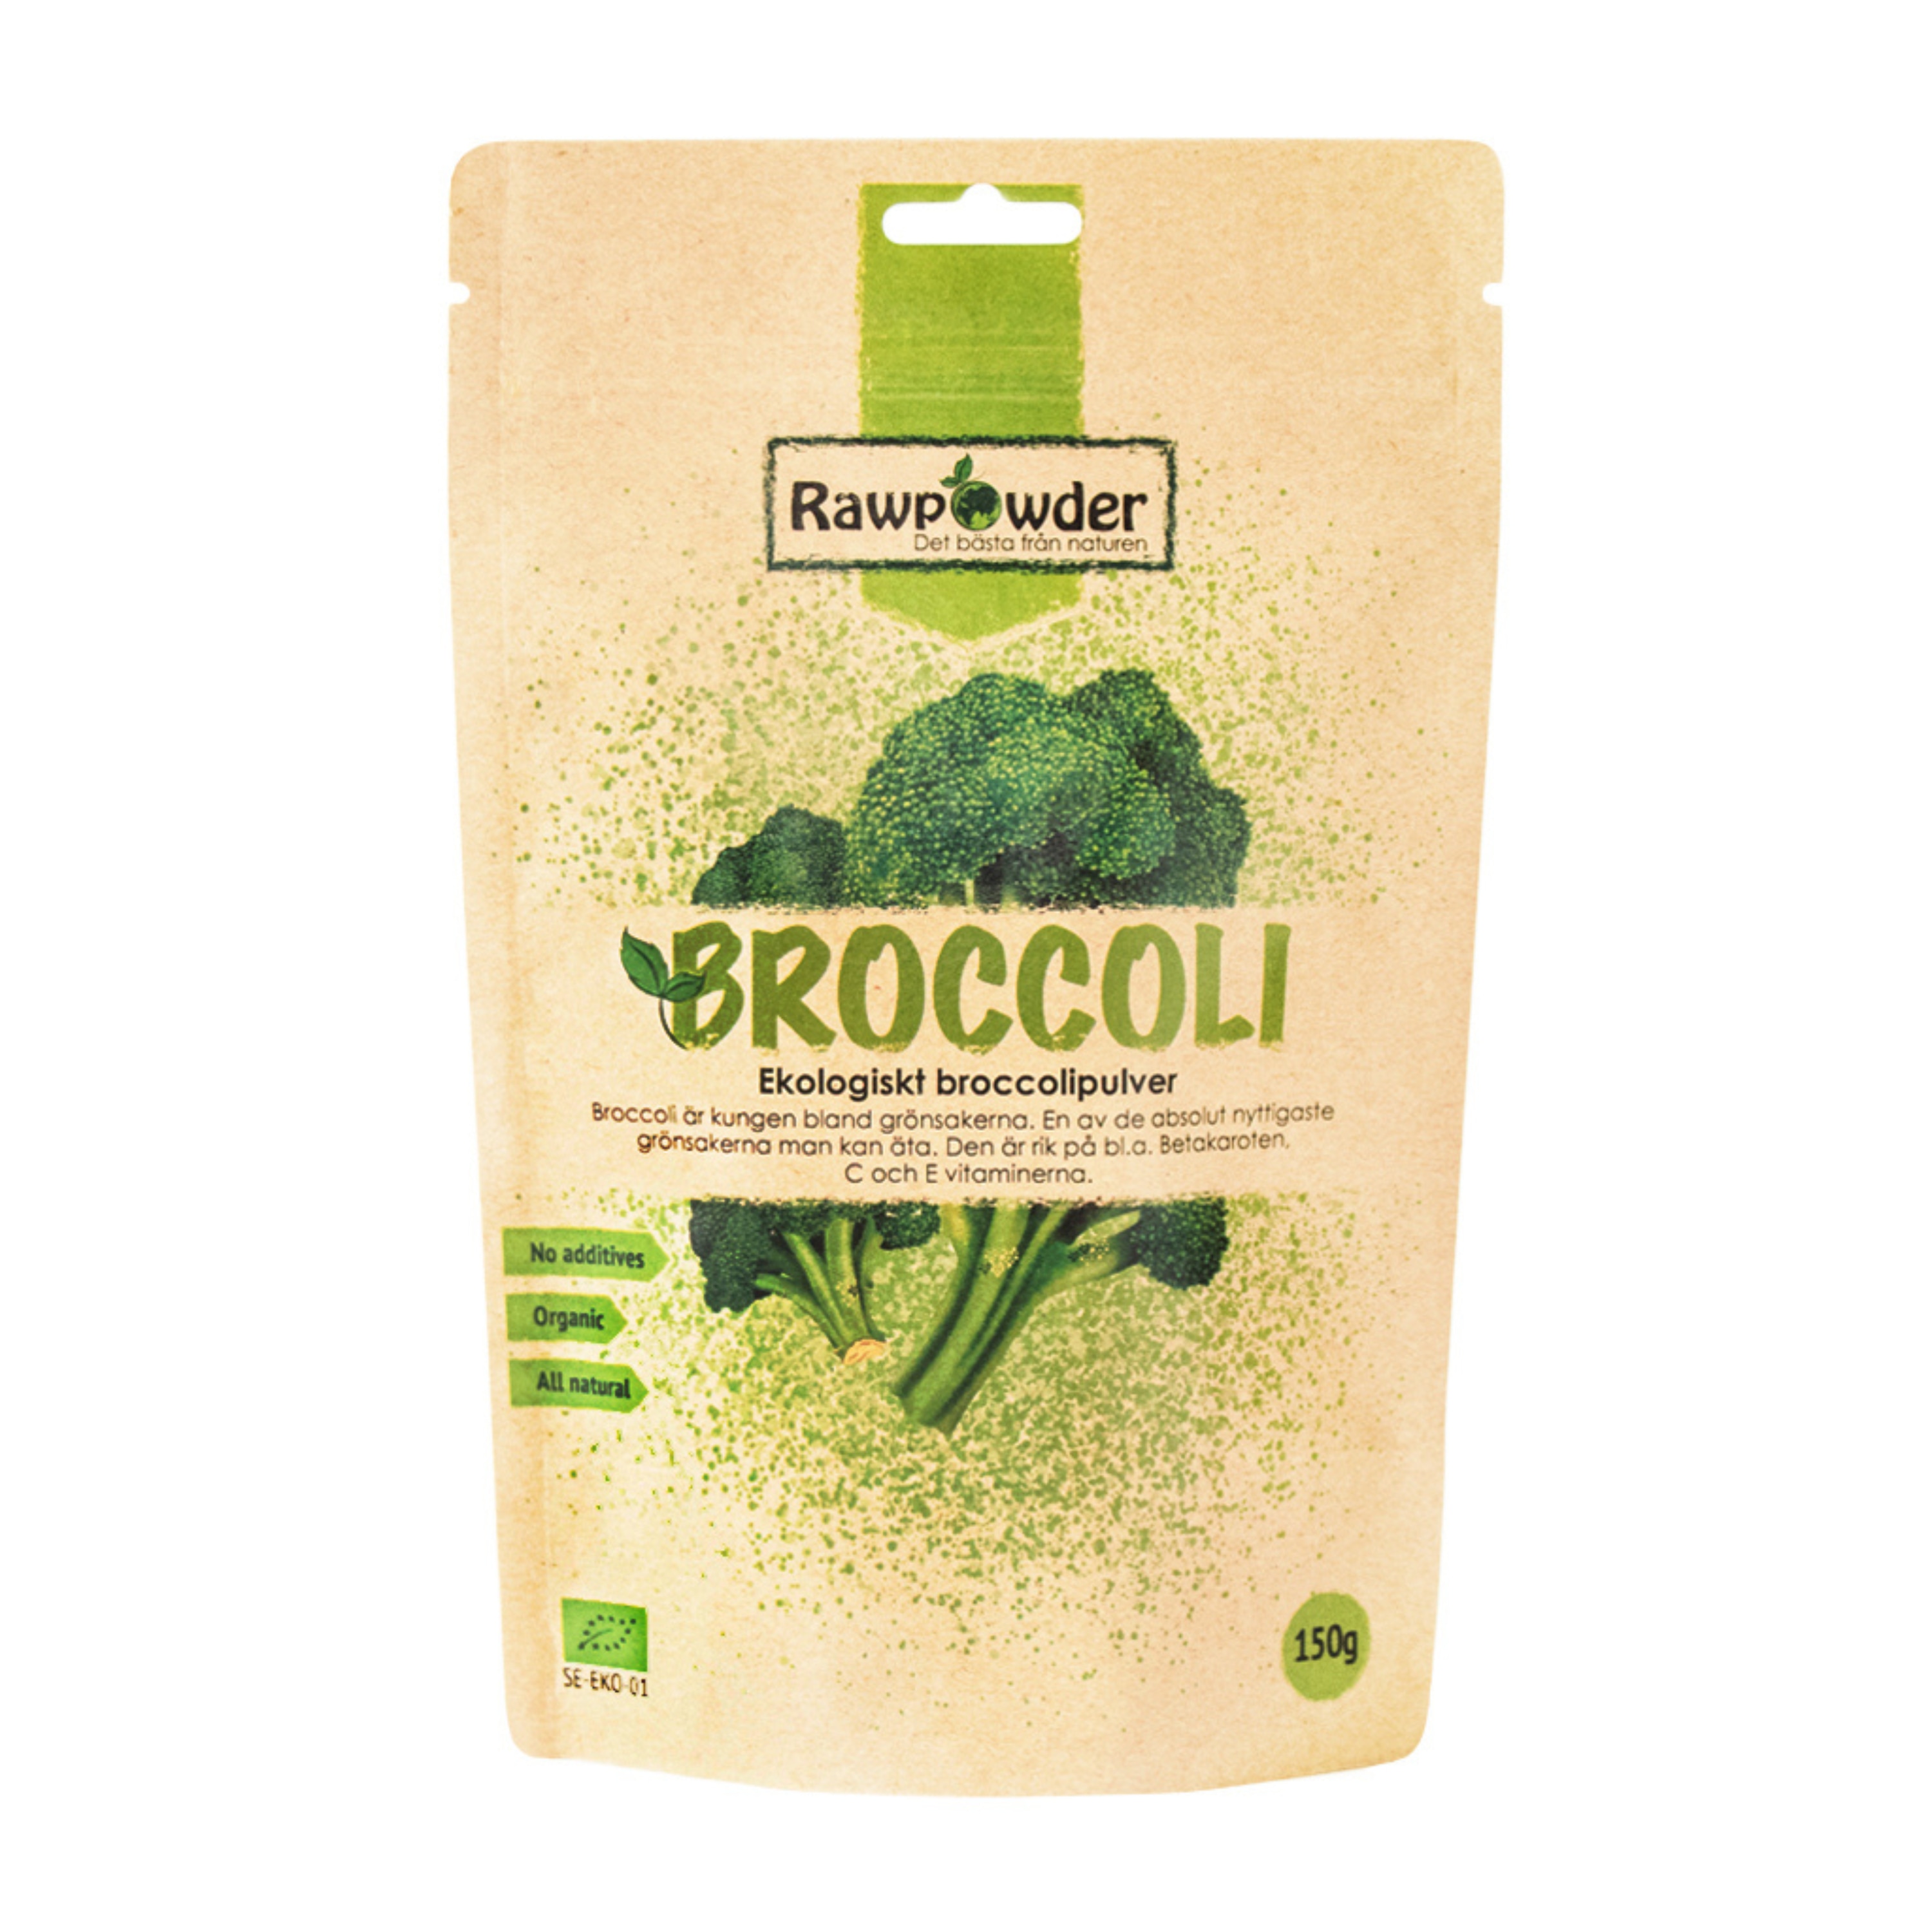 Broccolipulver 150g